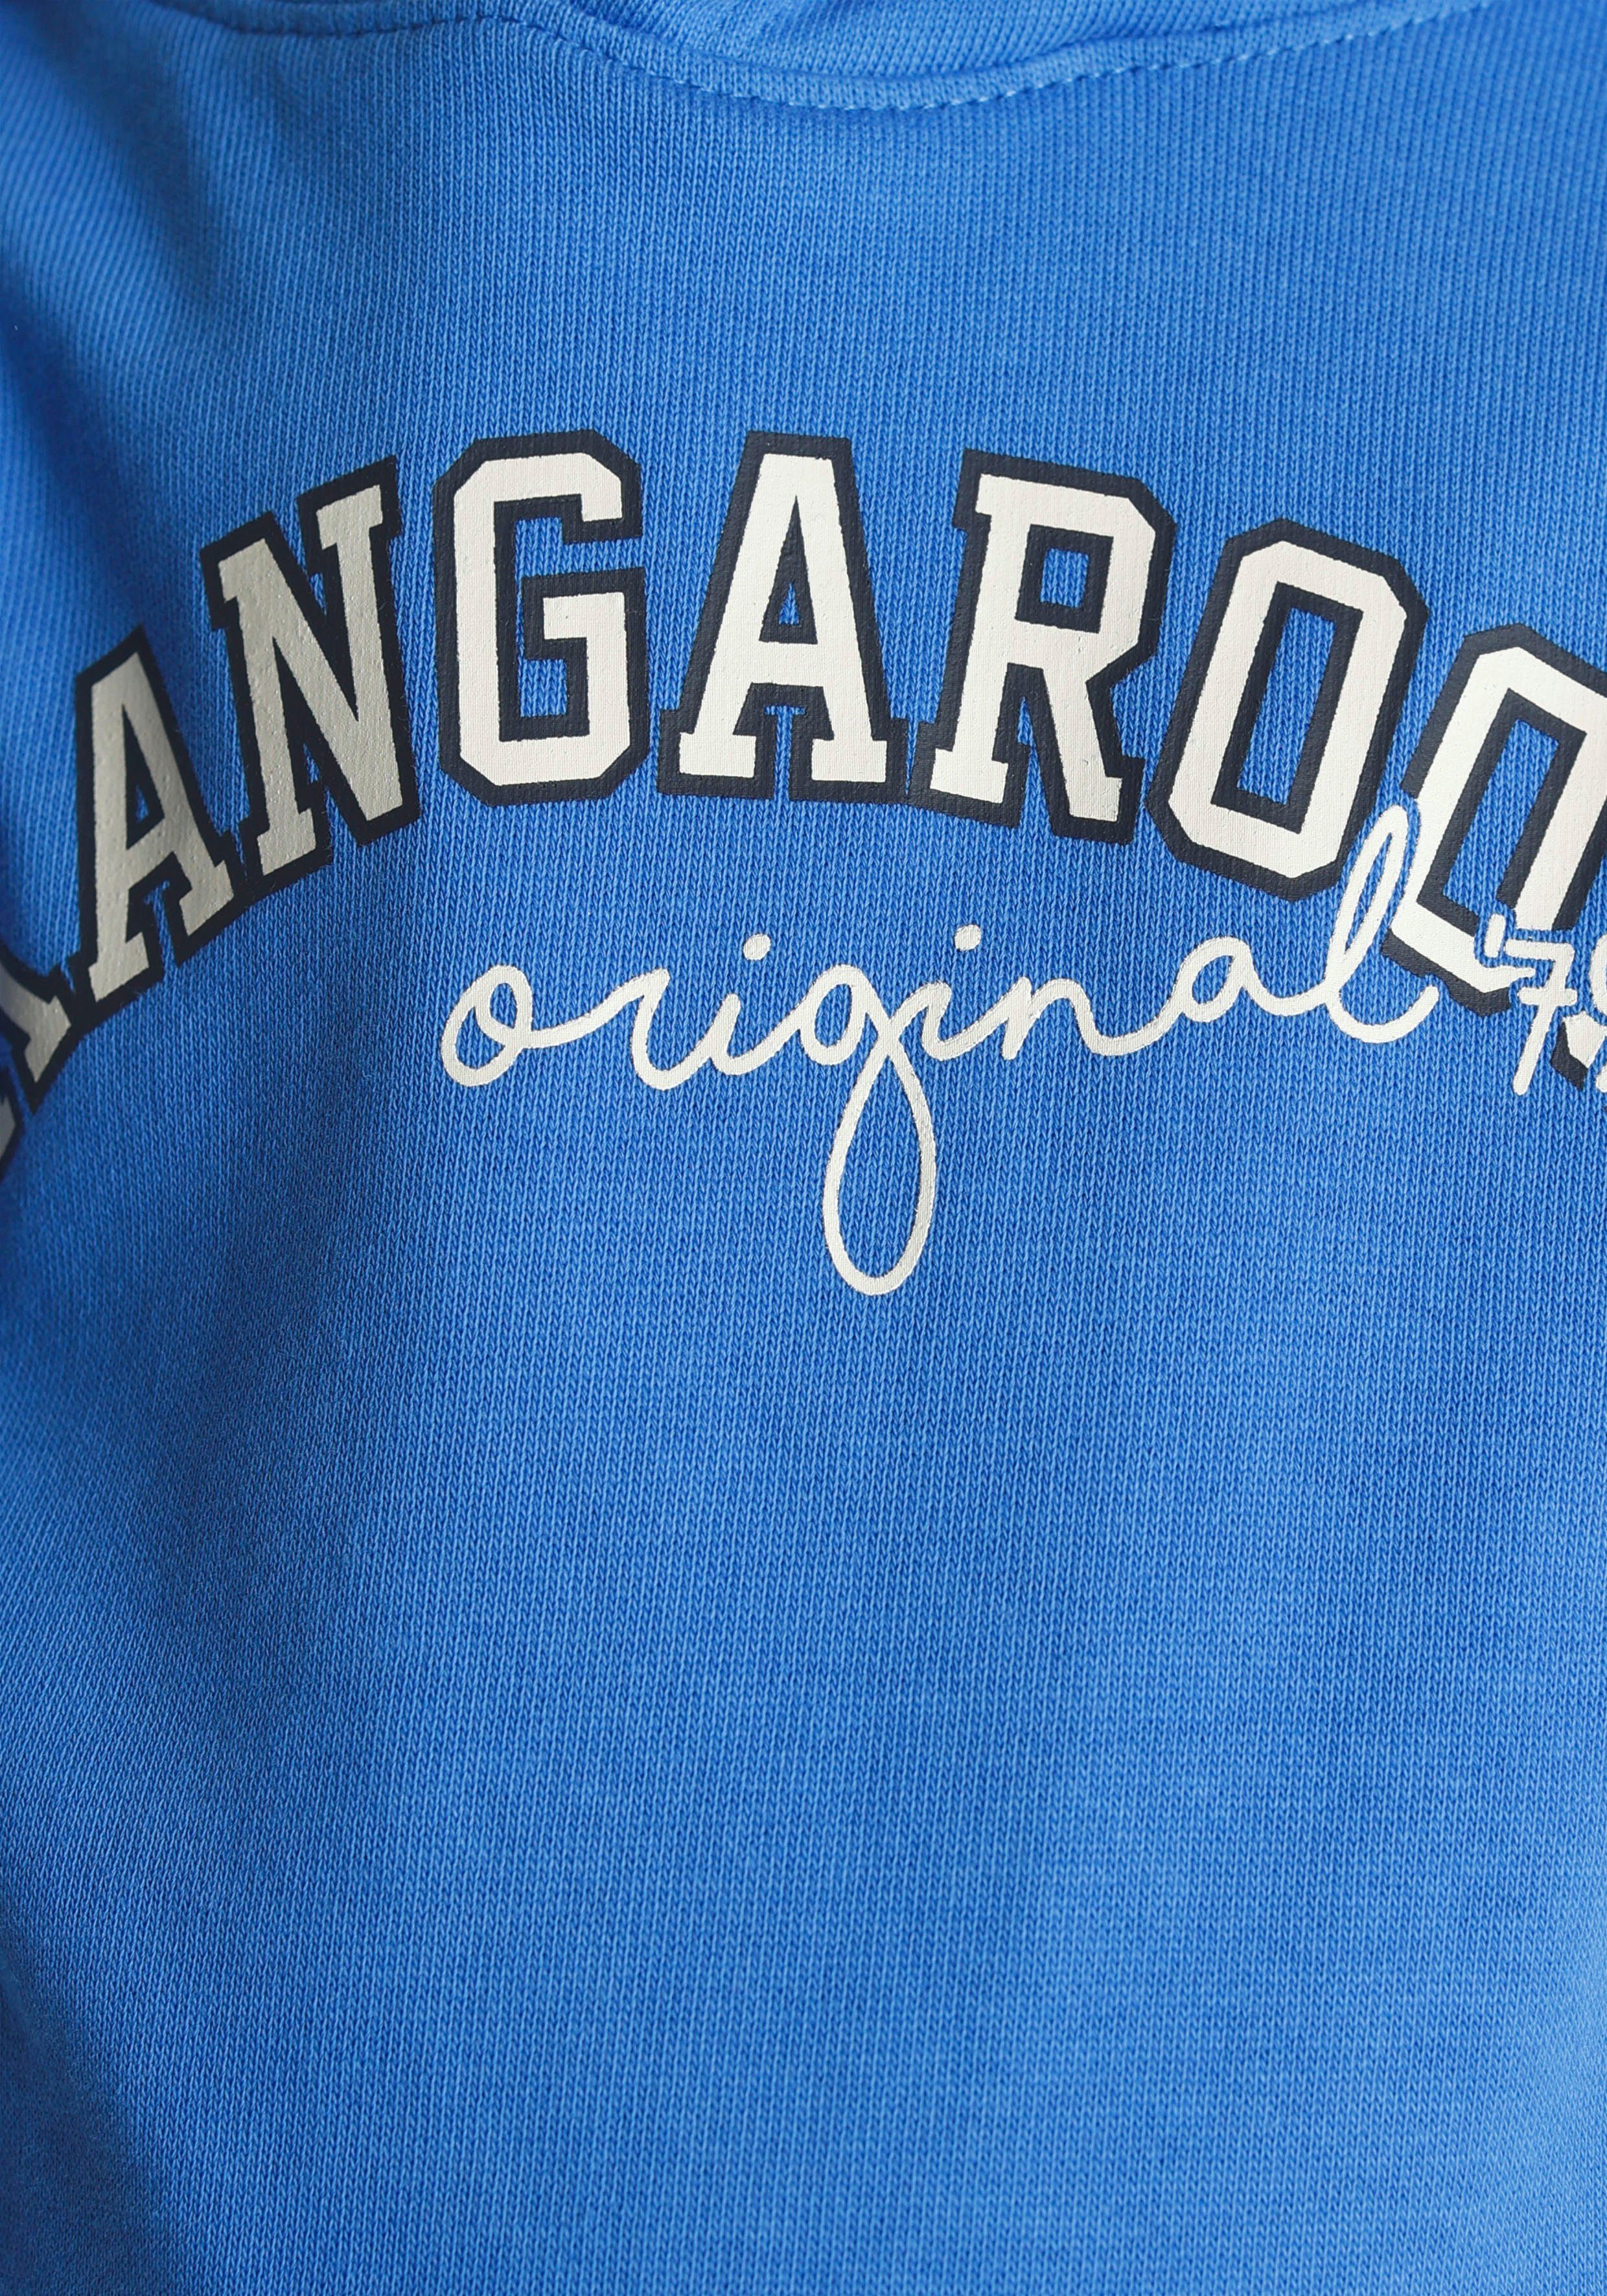 Ärmeln, Jungen Mini Colorblocking, Streifen mit an Kapuzensweatshirt für den KangaROOS